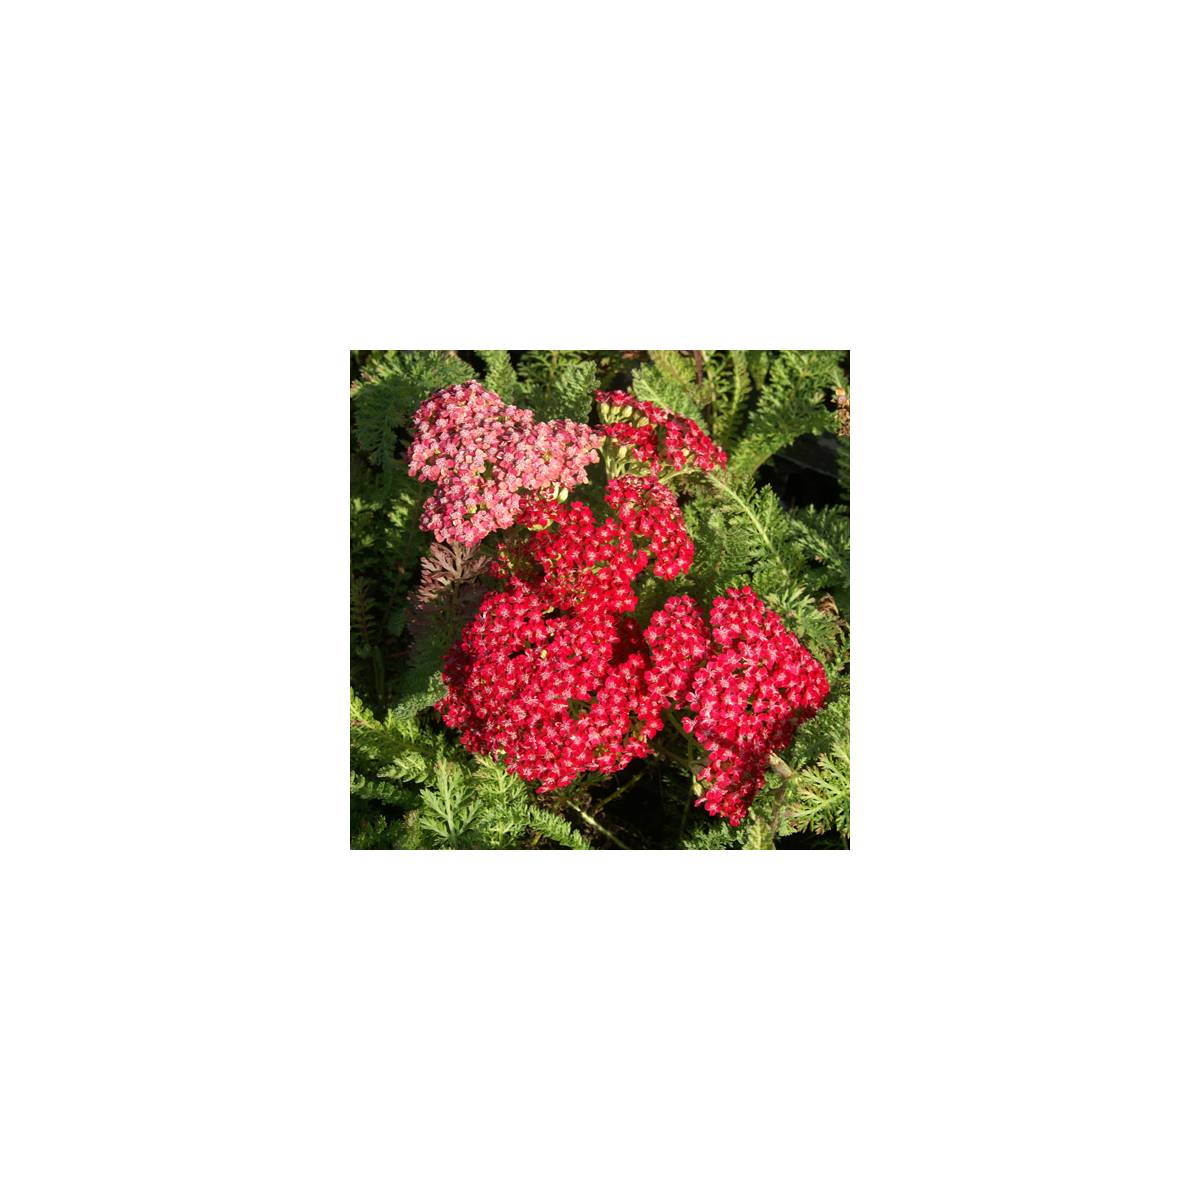 Achillée millefeuille red velvet/achillea millefolium 'red velvet'[-]lot de 3 godets